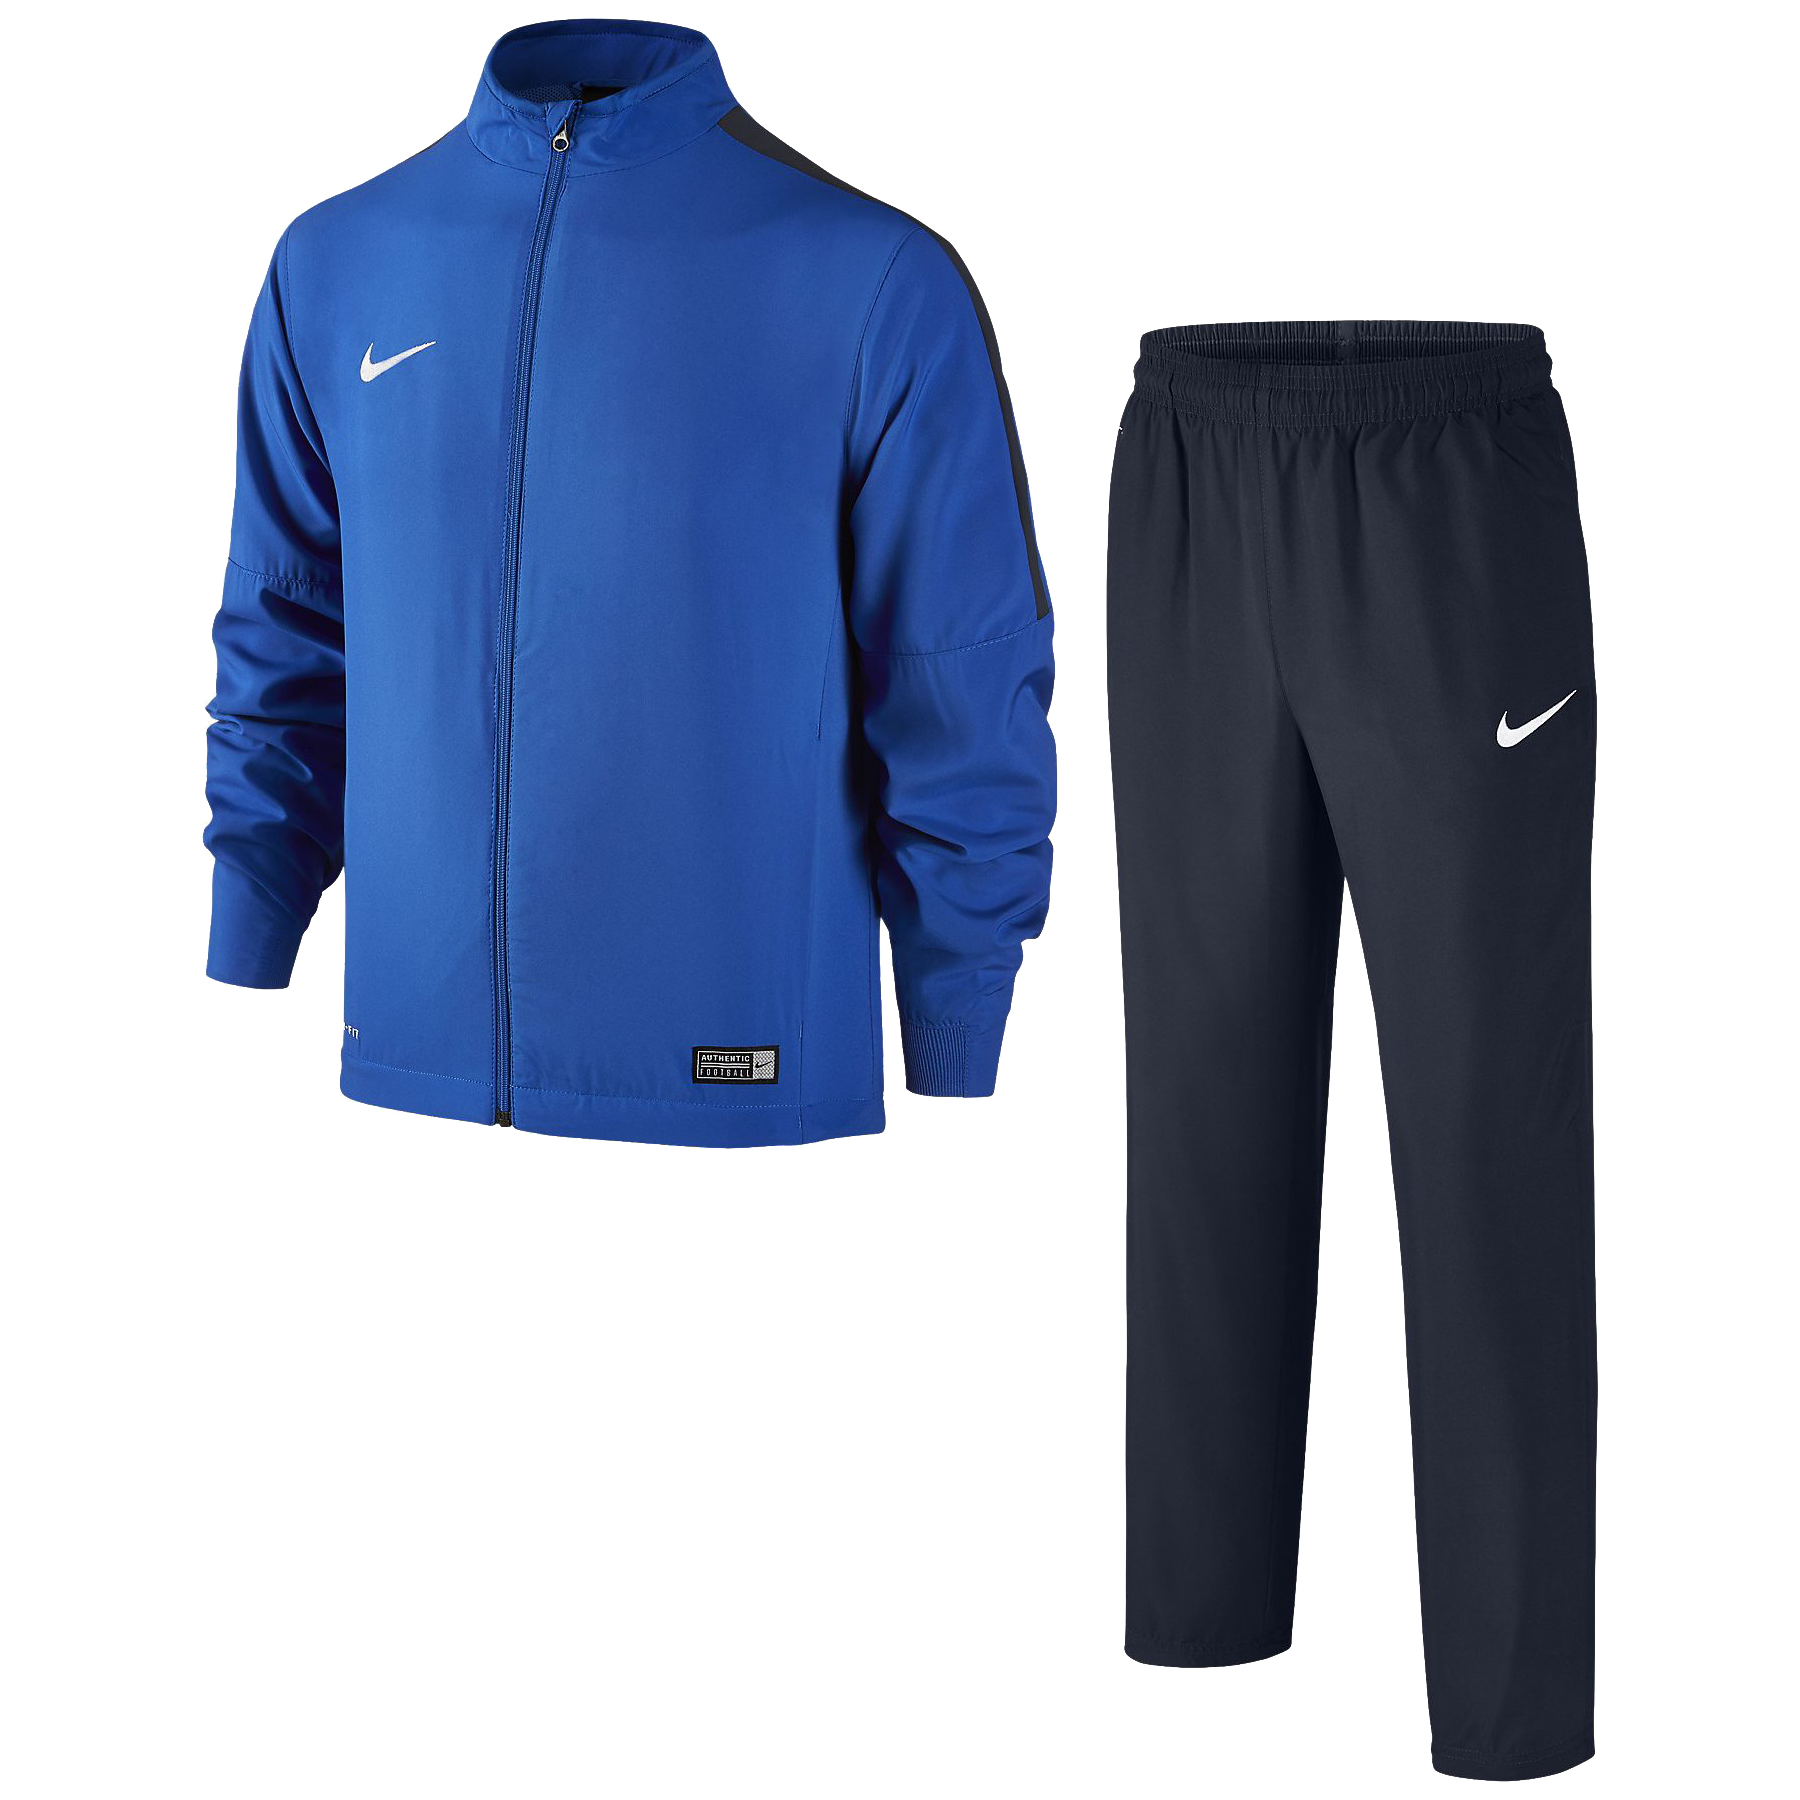 Nike Academy 16 modrá/tmavě modrá/bílá UK Junior XL Dětské